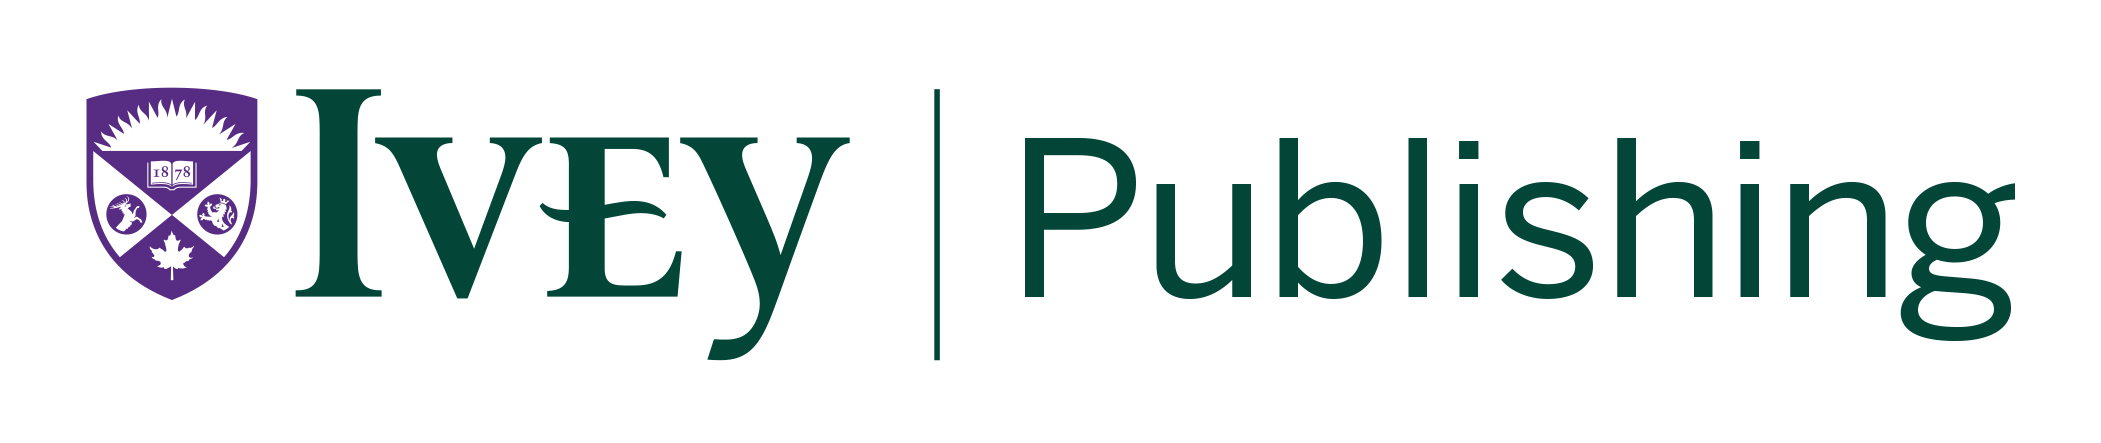 Ivey Publishing logo